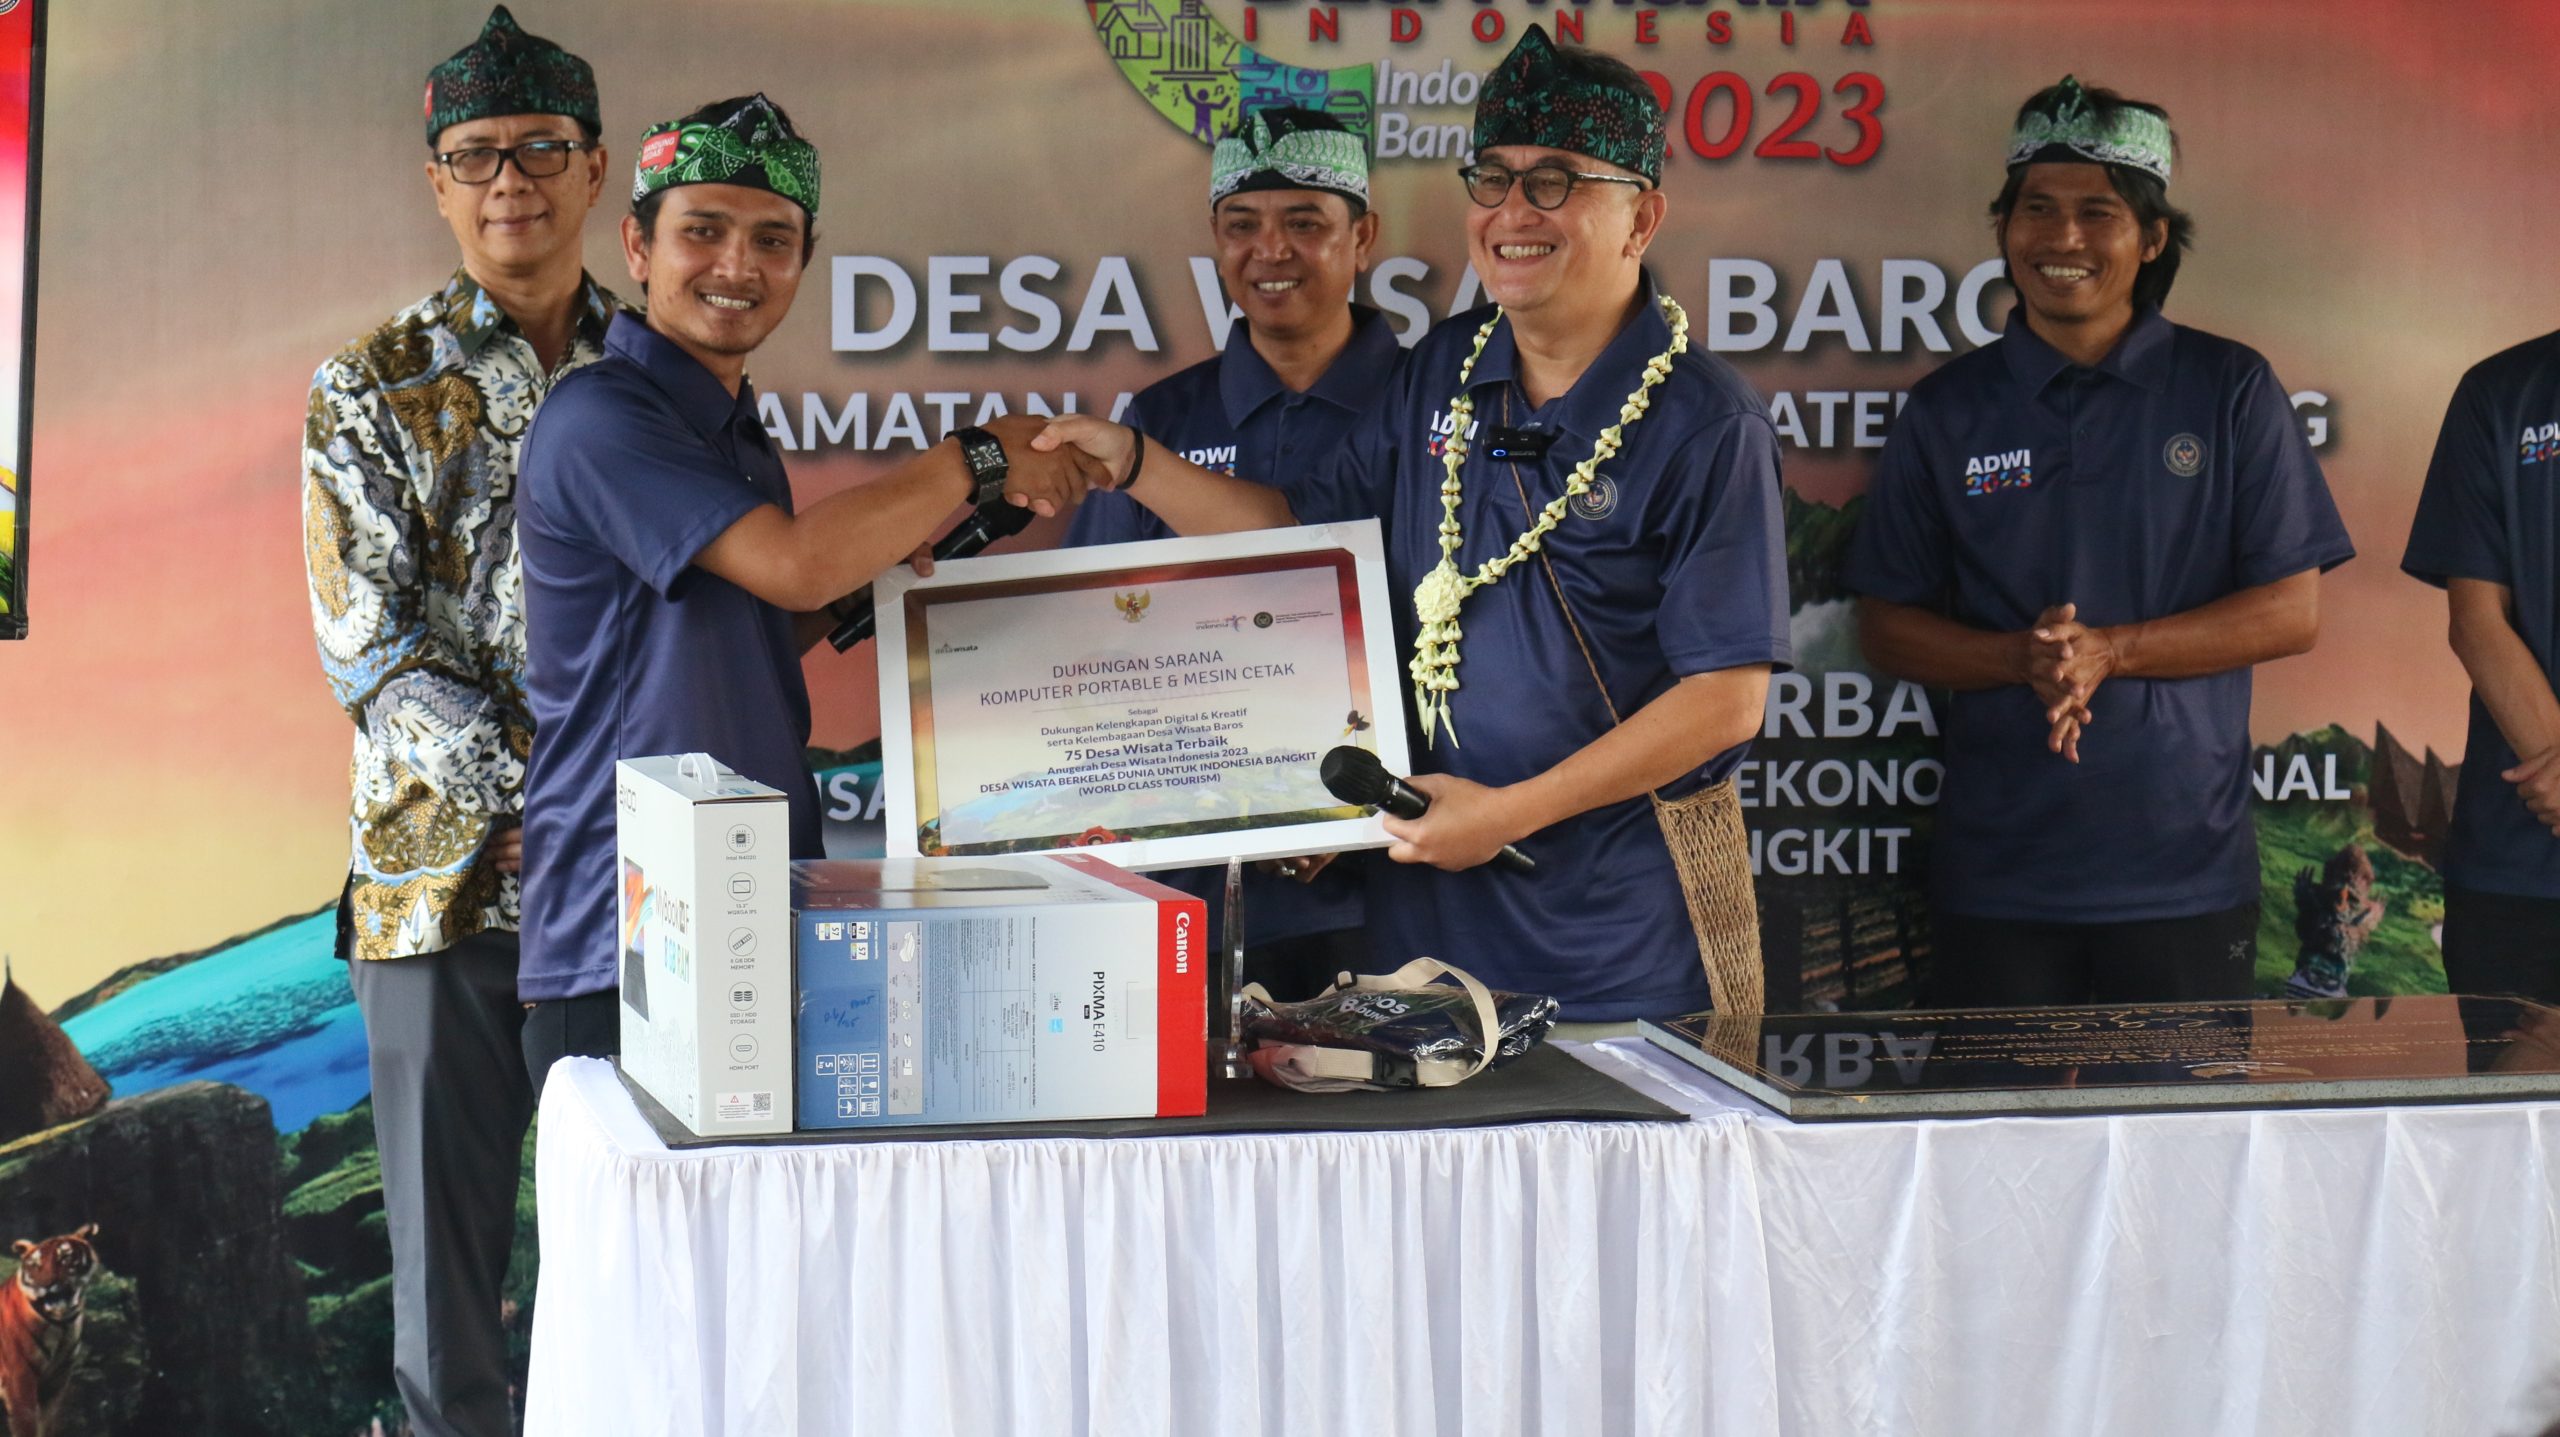 Desa Baros Kabupaten Bandung Berhasil Torehkan Prestasi, Masuk 75 Besar ADWI 2023